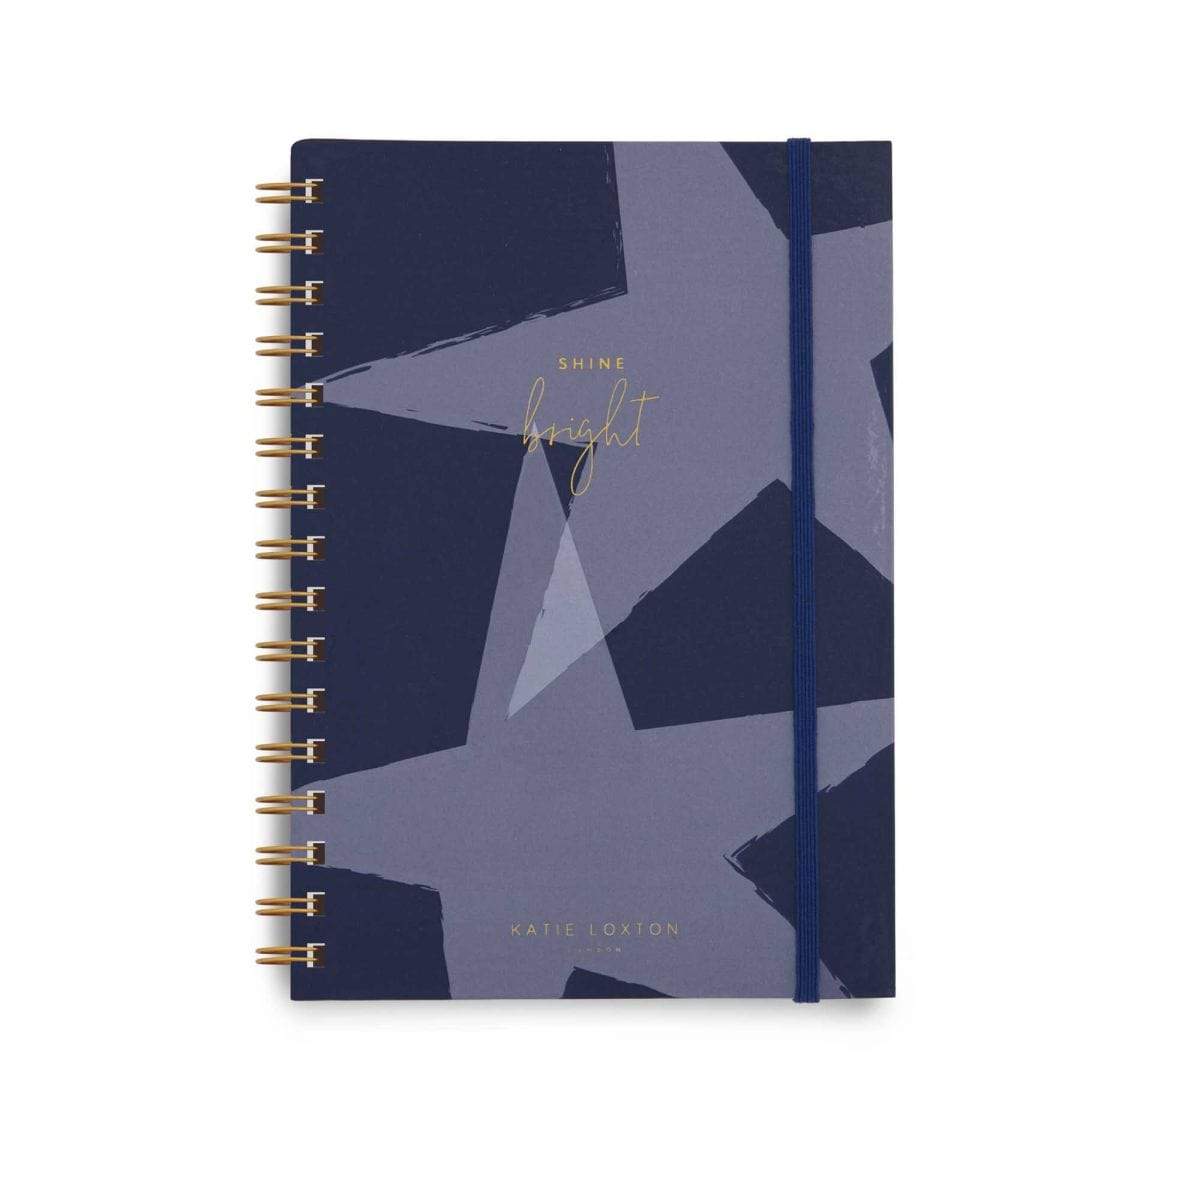 Katie Loxton Notebook Katie Loxton Star Print Spiral Bound Notebook - Shine Bright- Navy